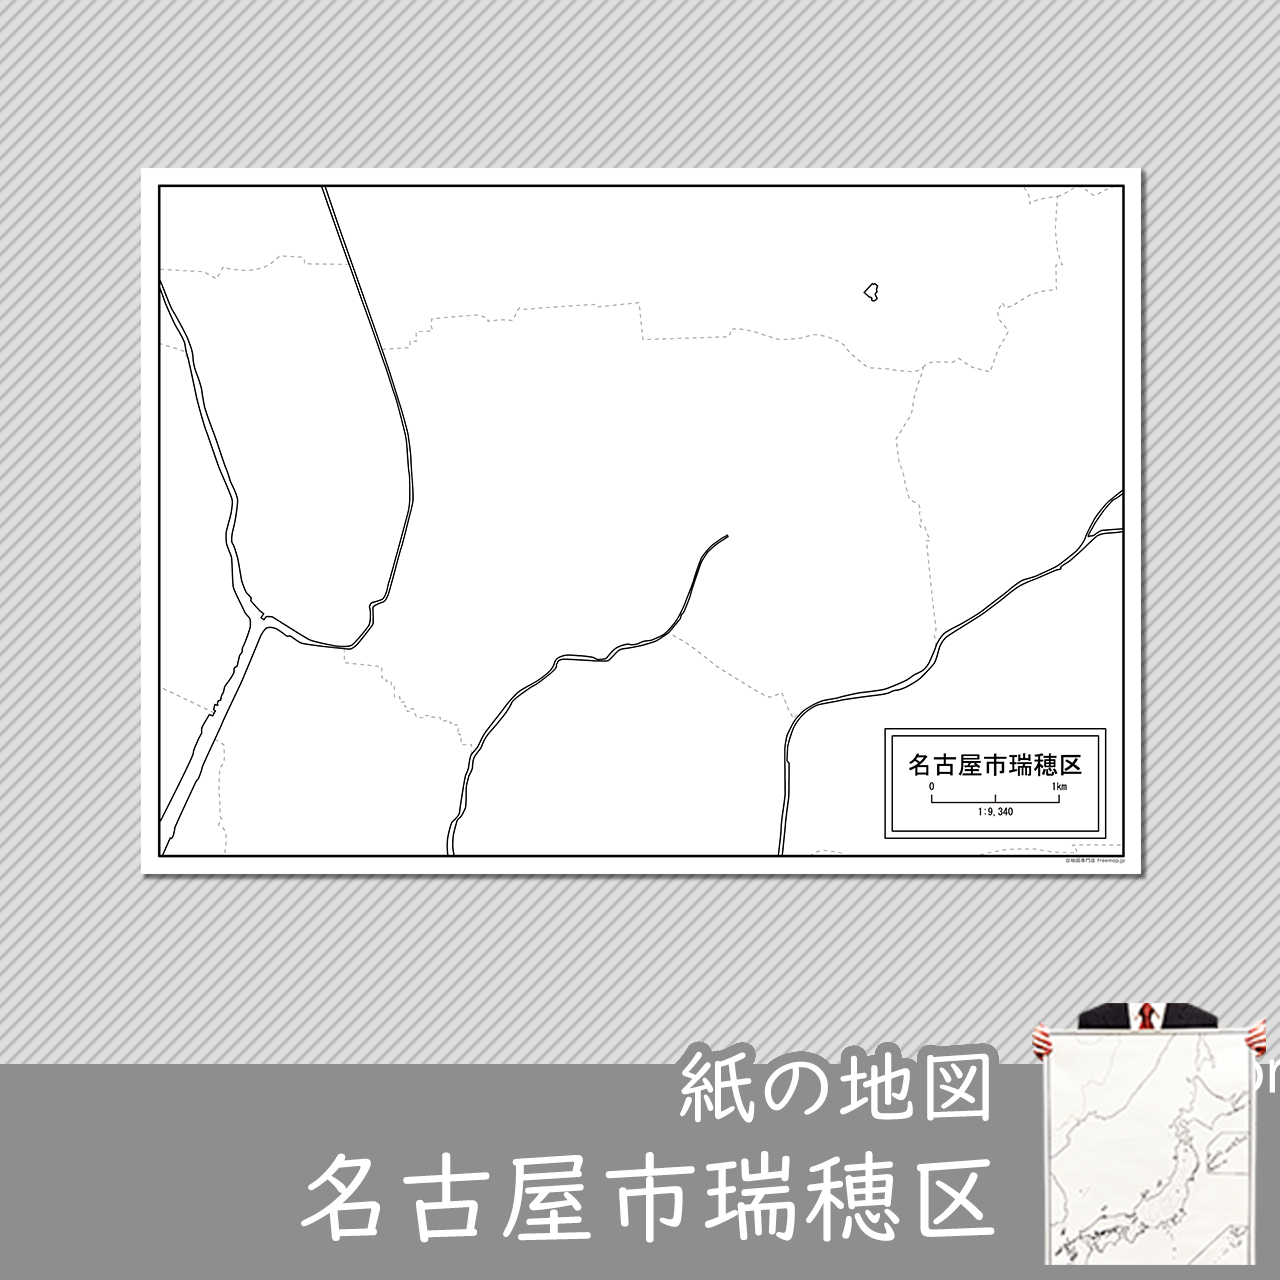 名古屋市瑞穂区の紙の白地図のサムネイル